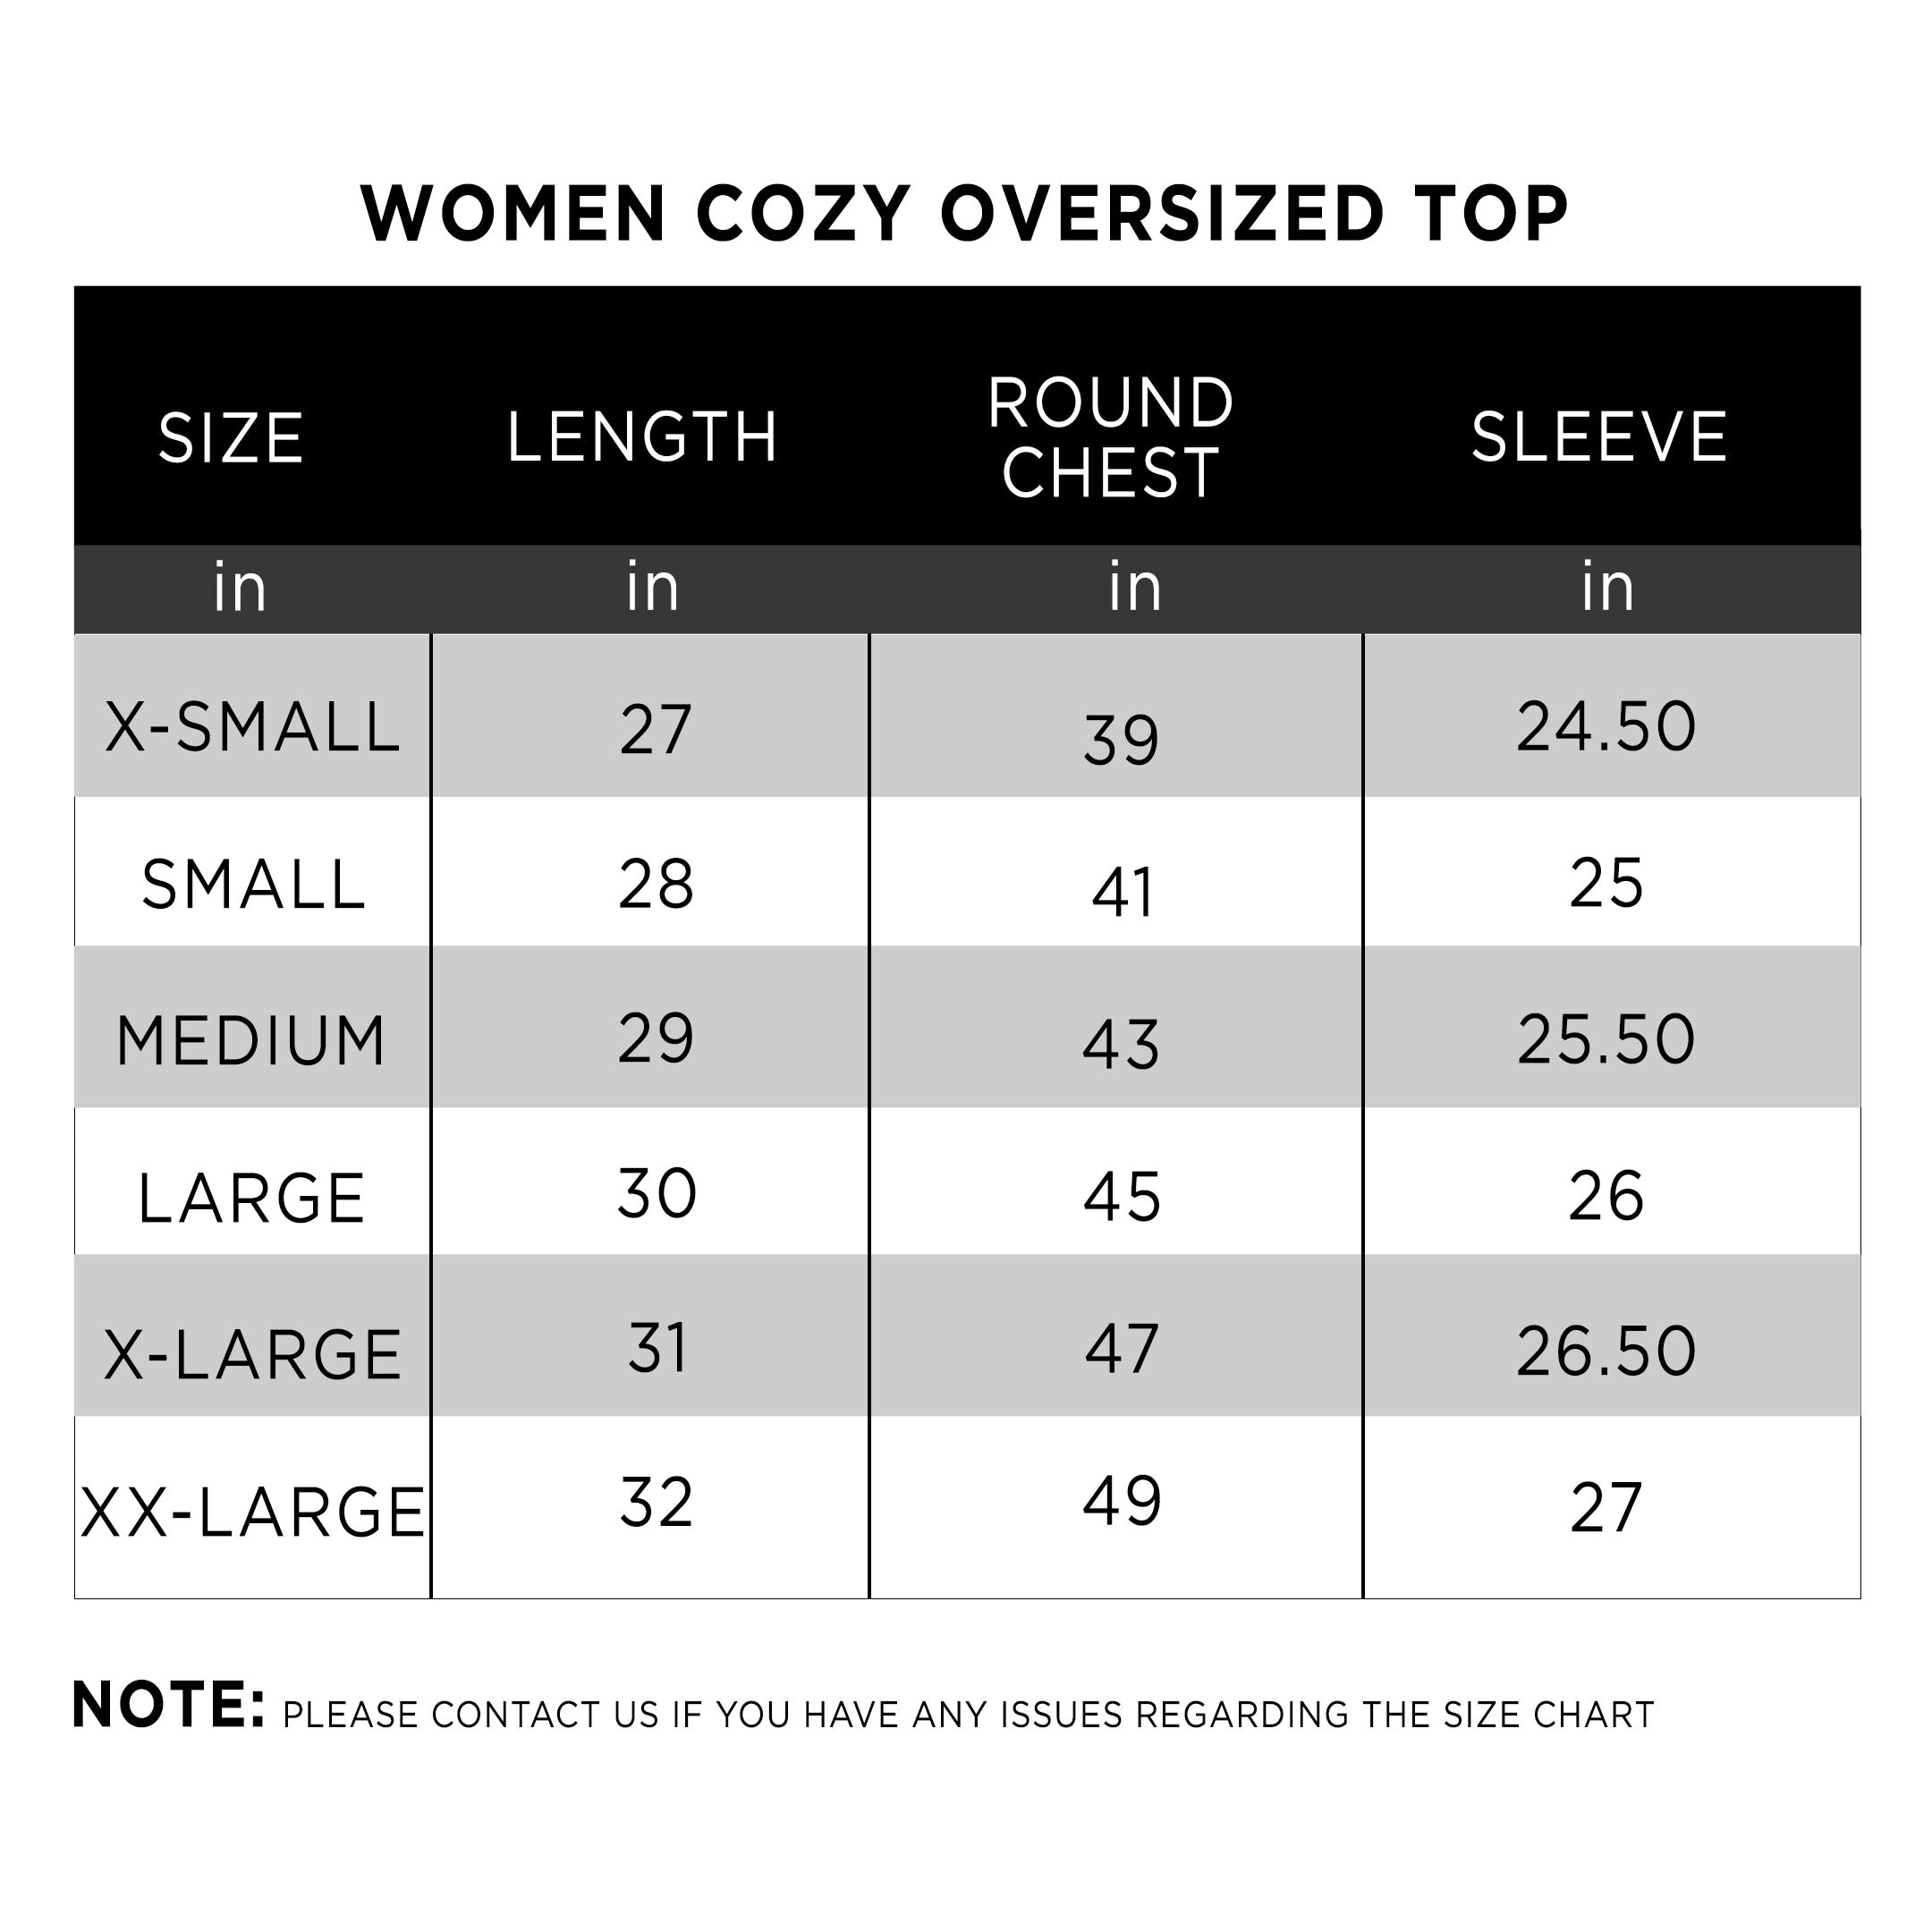 Women Cozy Oversized Top